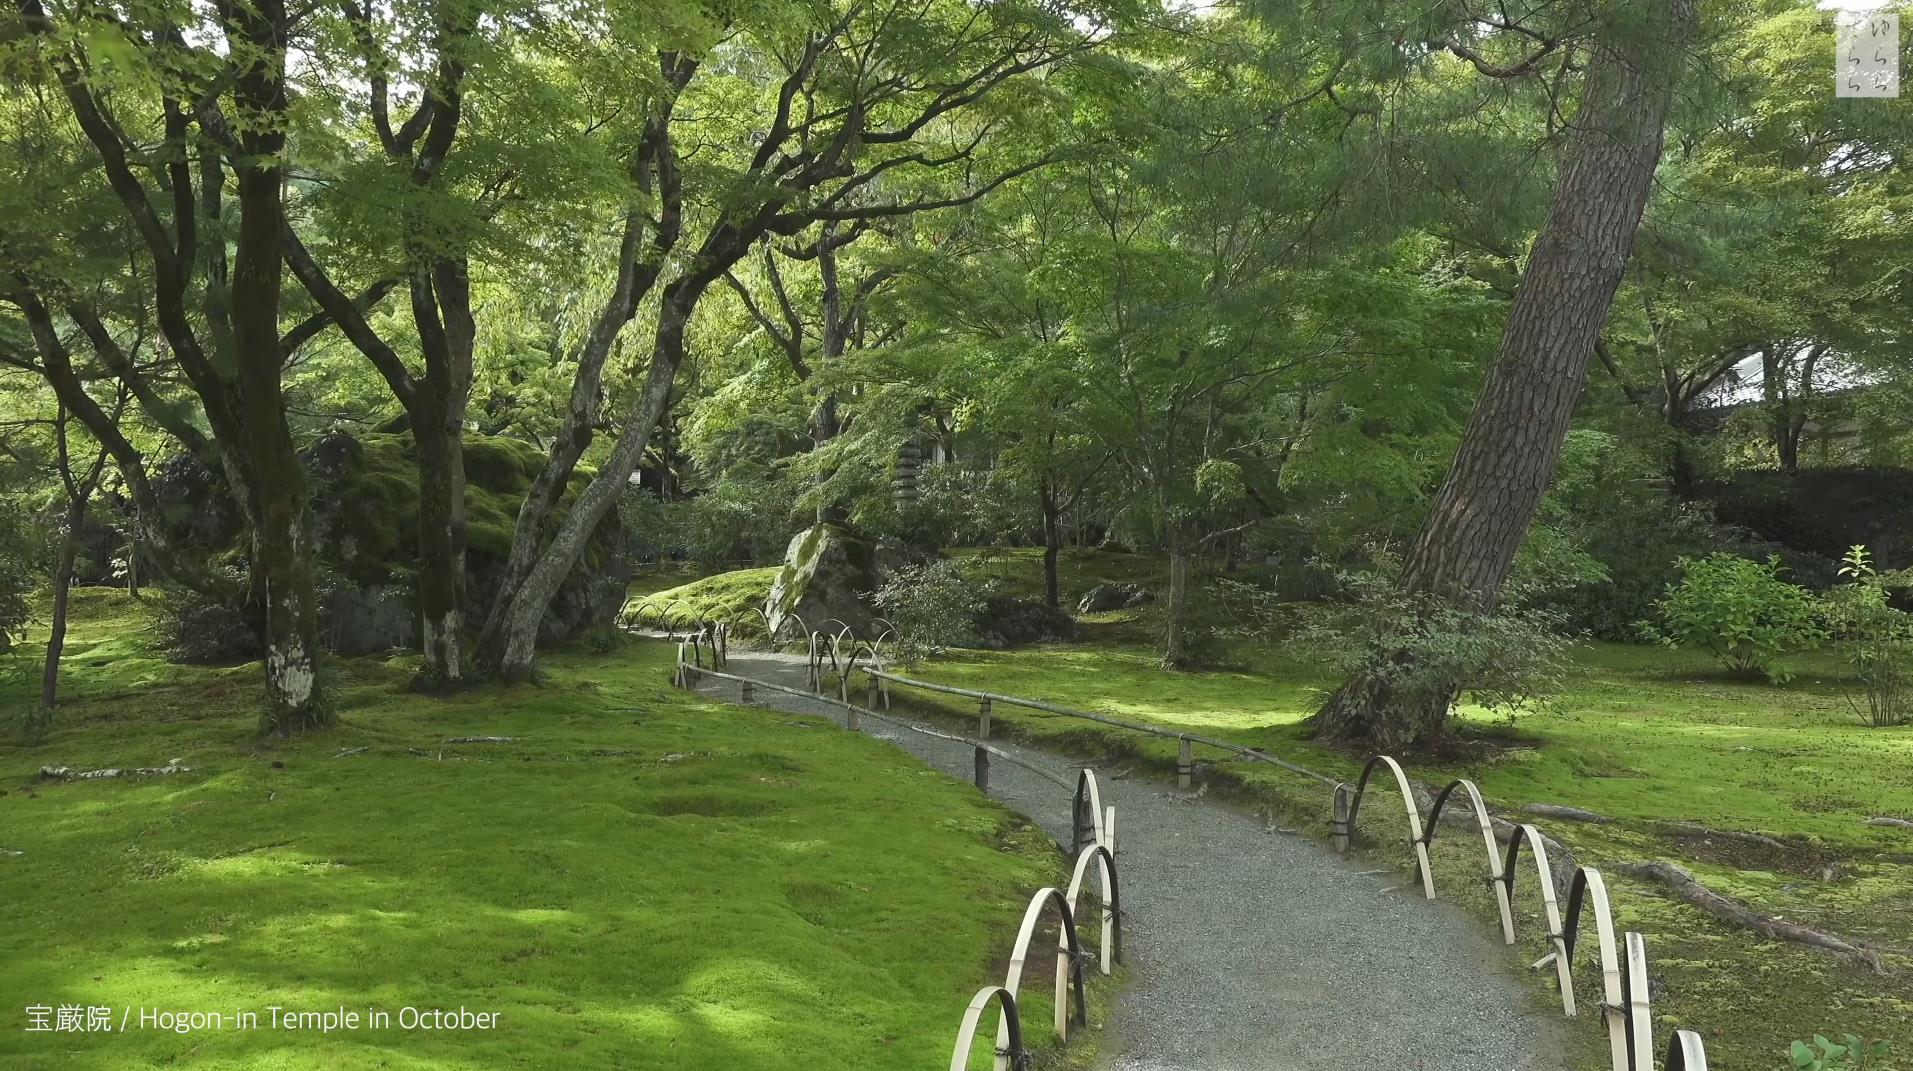 Wabi-Sabi-侘寂庭院,侘寂庭院,京都,侘寂设计,侘寂视频下载,日式侘寂庭院